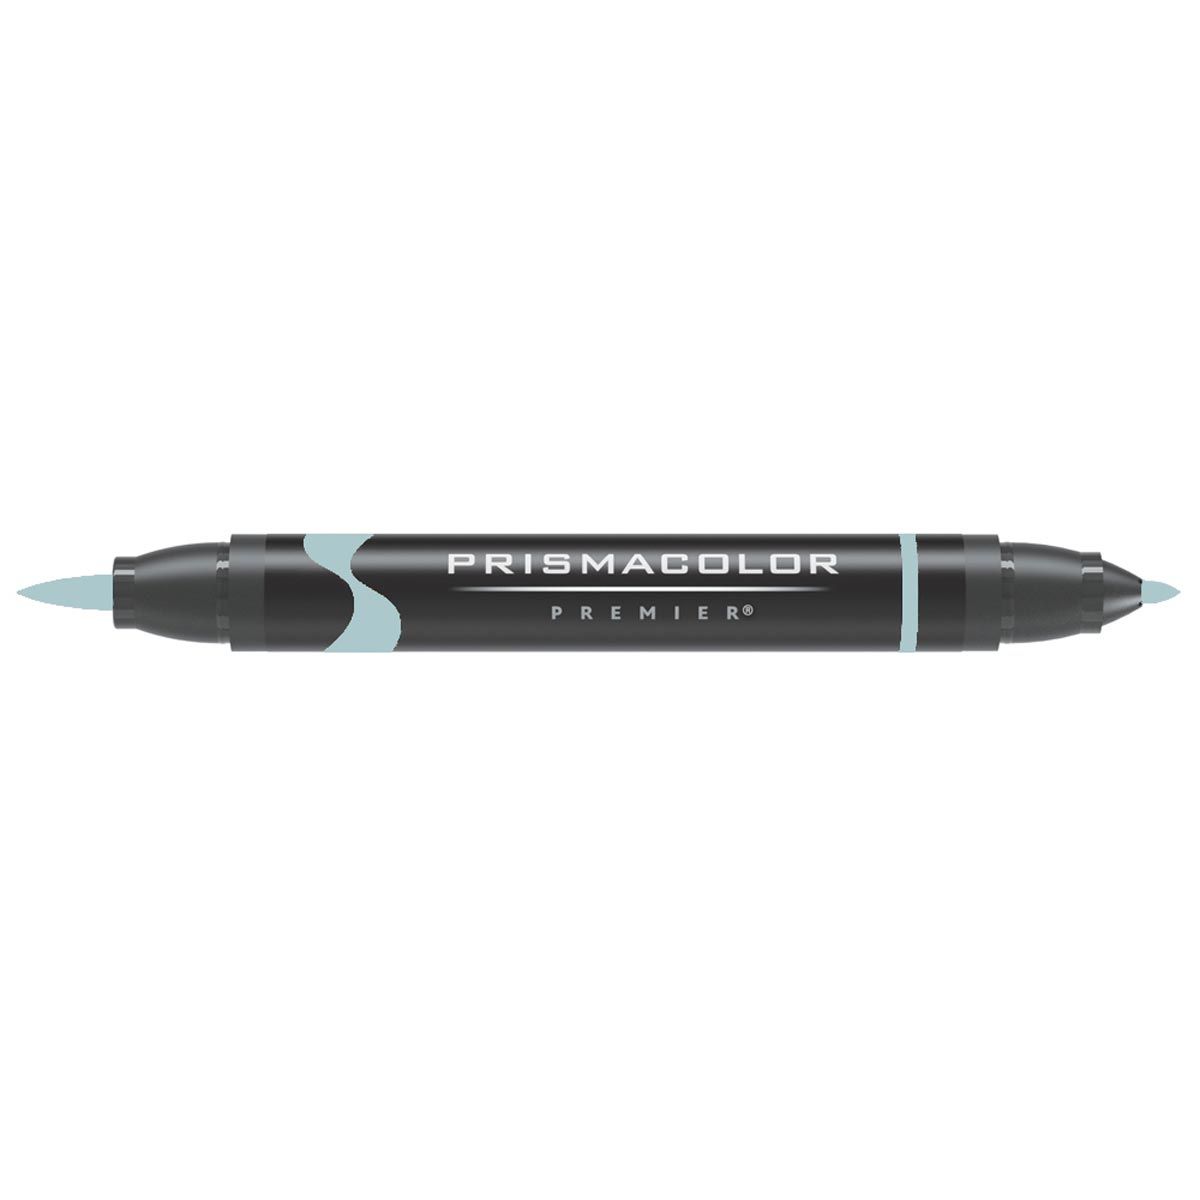 Prismacolor Brush Tip Marker - Cool Grey 40%